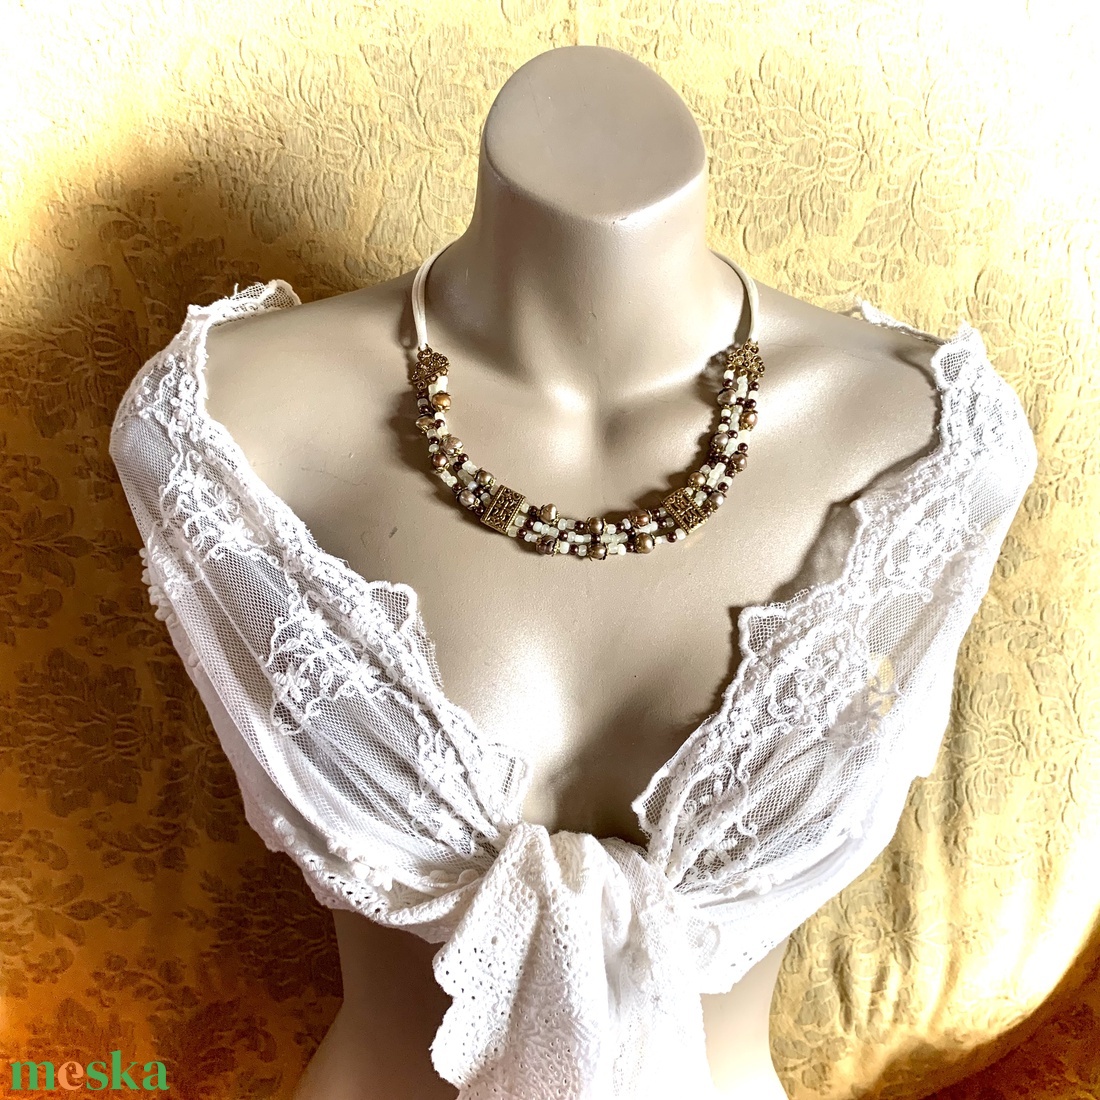 Bizánci stílusú 3 soros nyakék, ásványgyöngy nyaklánc, achat igazgyöngy üveggyöngy nyaklánc, külömleges ékszer, lánc - ékszer - ékszerszett - Meska.hu